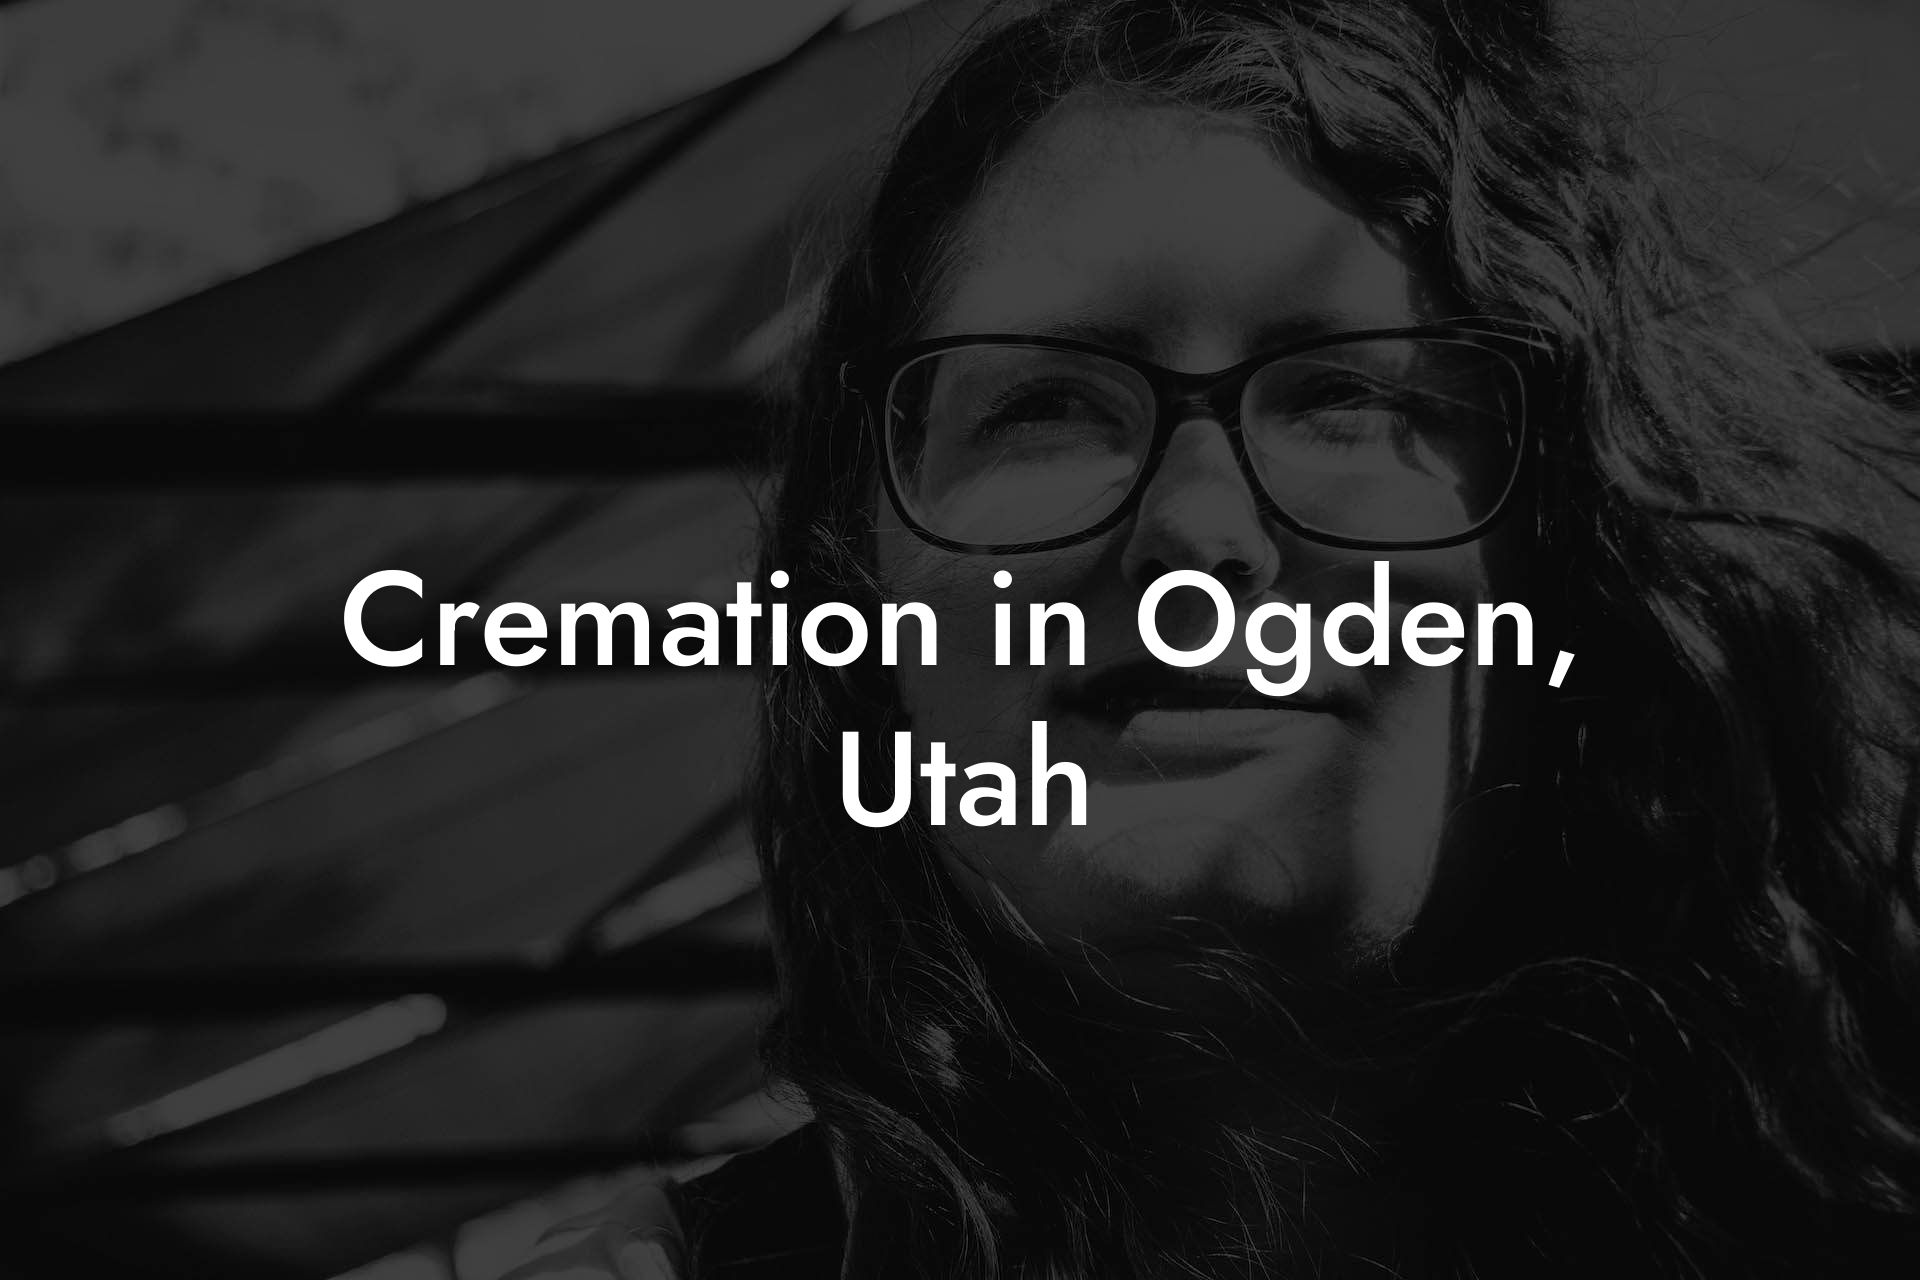 Cremation in Ogden, Utah